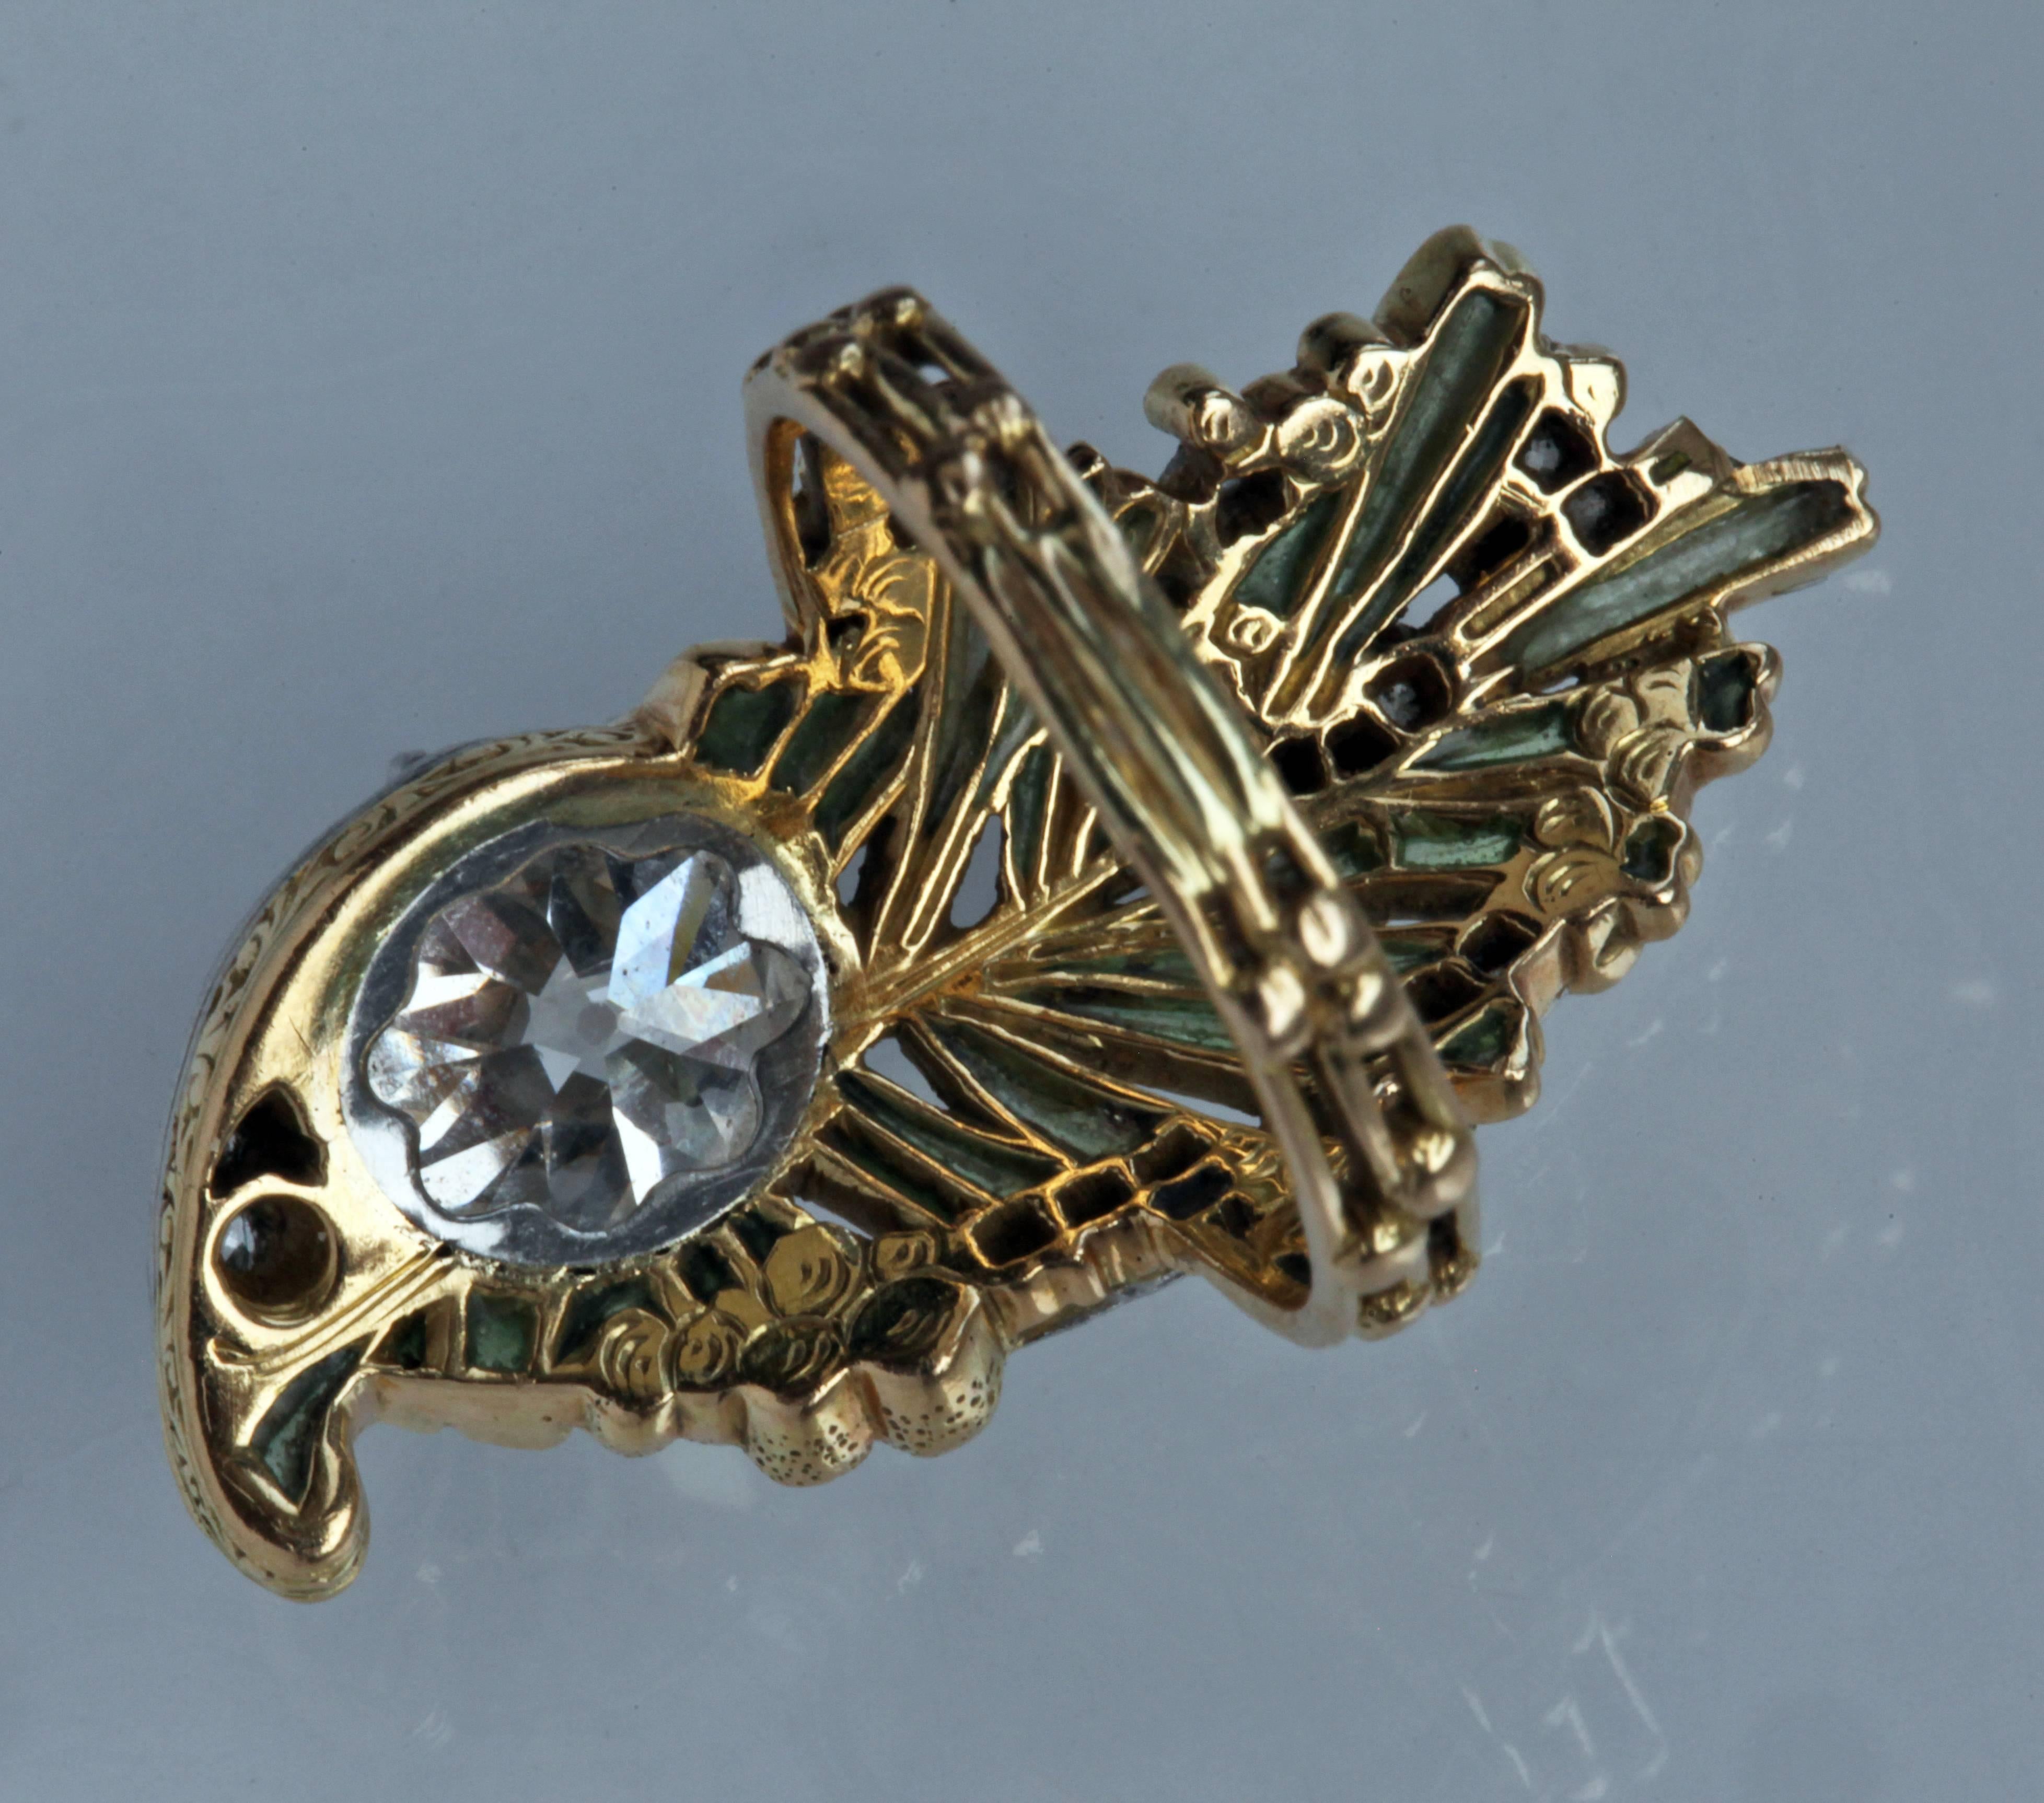 Brilliant Cut Magnificent Art Nouveau Plique-a-Jour Diamond Gold Ring For Sale